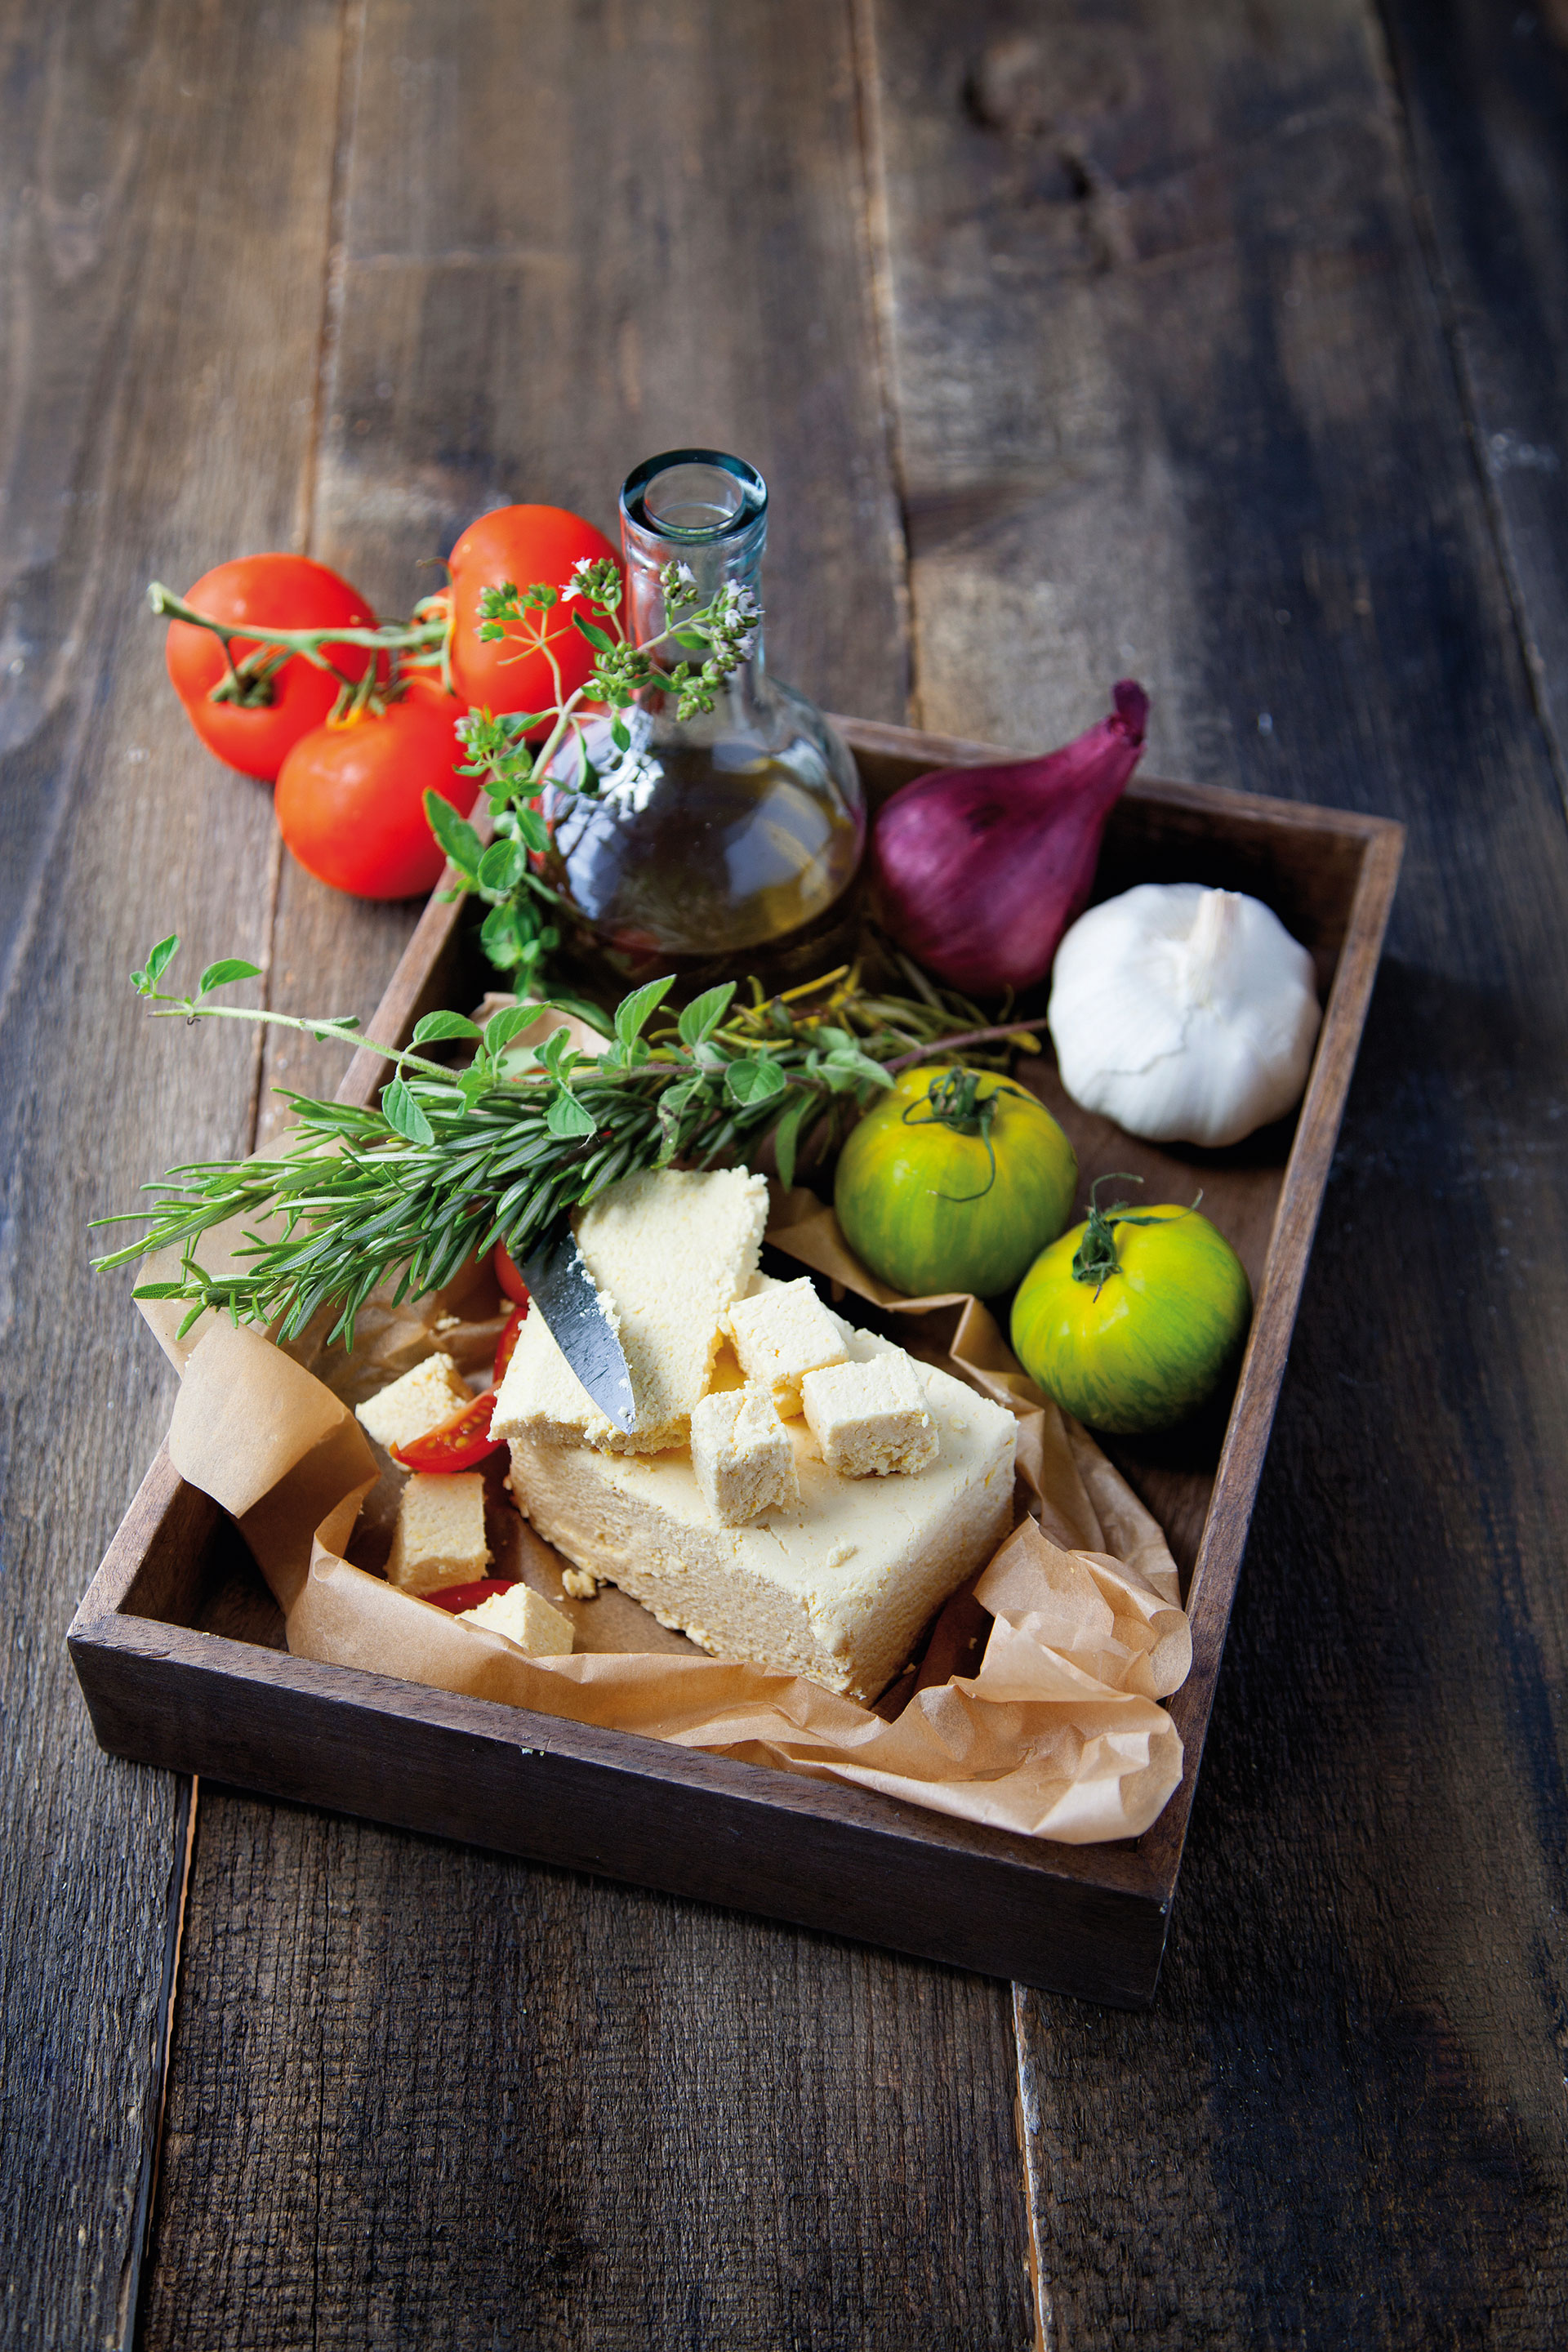 Tablett mit einem Block veganem Käse nach Feta-Art und weiteren Zutaten (Kräuterzweige, Öl, Tomaten, Zwiebel, Knoblauch)